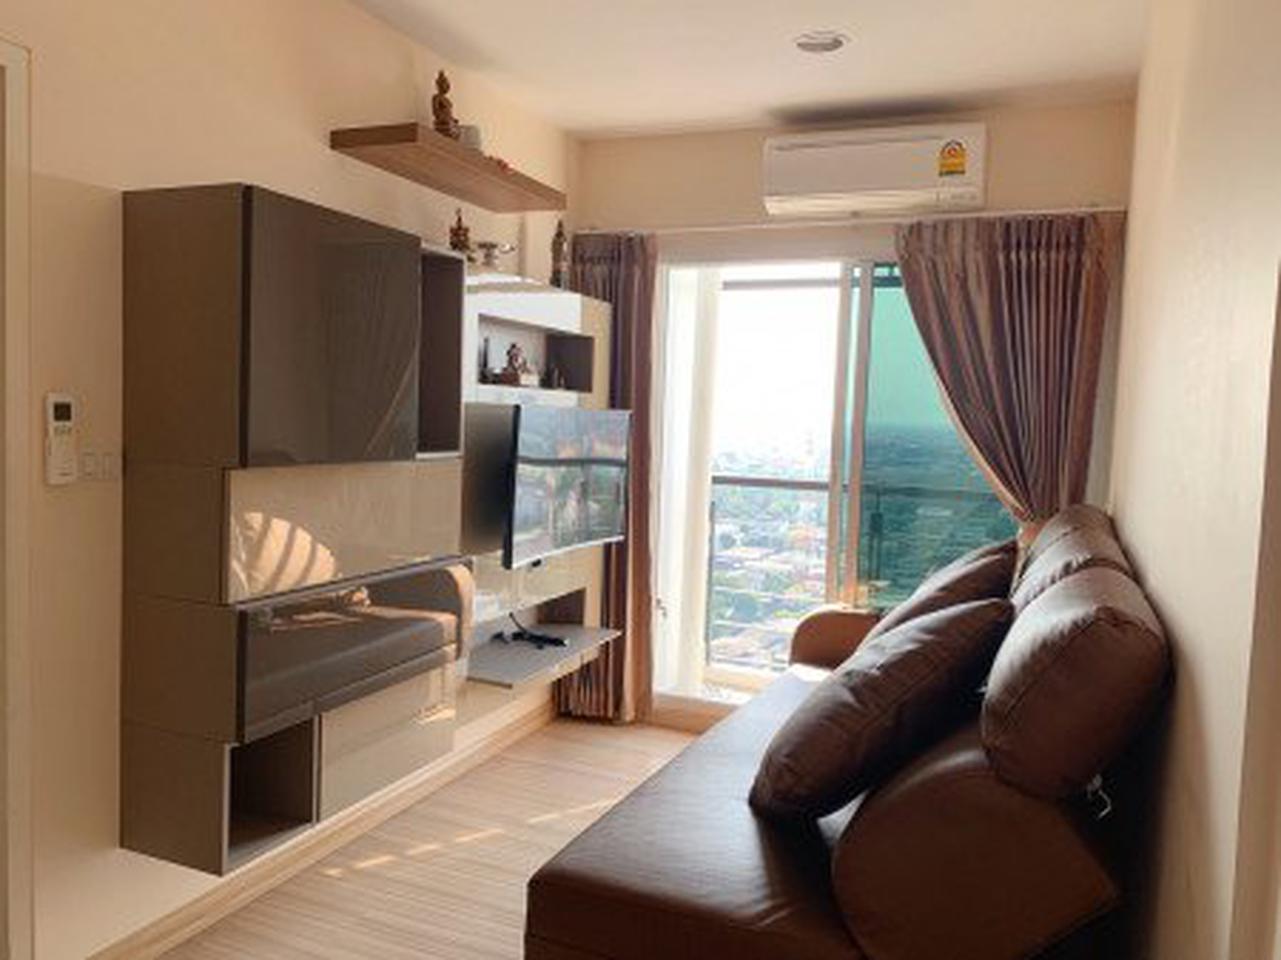 ขาย คอนโด ชั้นสูง วิวสวย เฟอร์SB ใหม่ครบ Bangkok Horizon รัชดา-ท่าพระ 32.80 ตรม. 1 ห้องนอน ราคาดีลพิเศษสุด ถูกสุด รูปที่ 5